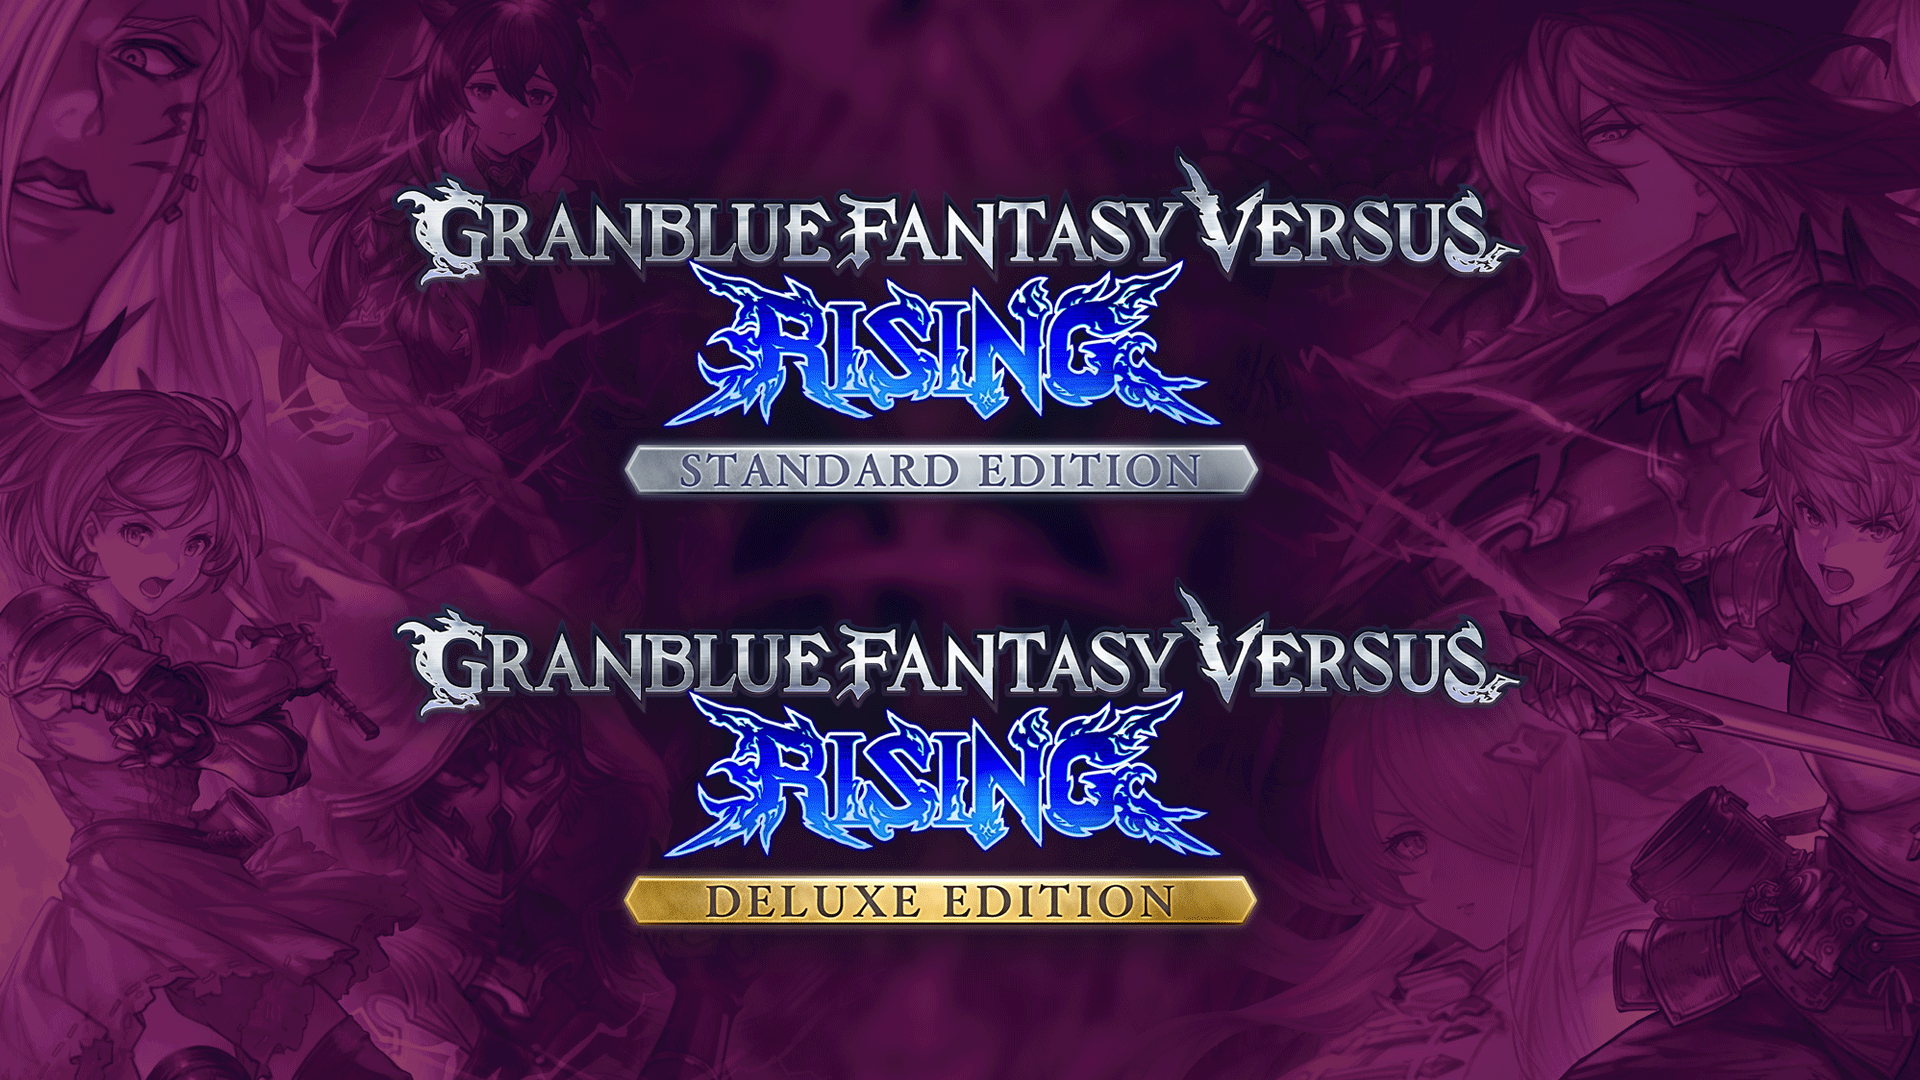 Review Granblue Fantasy Versus: Rising